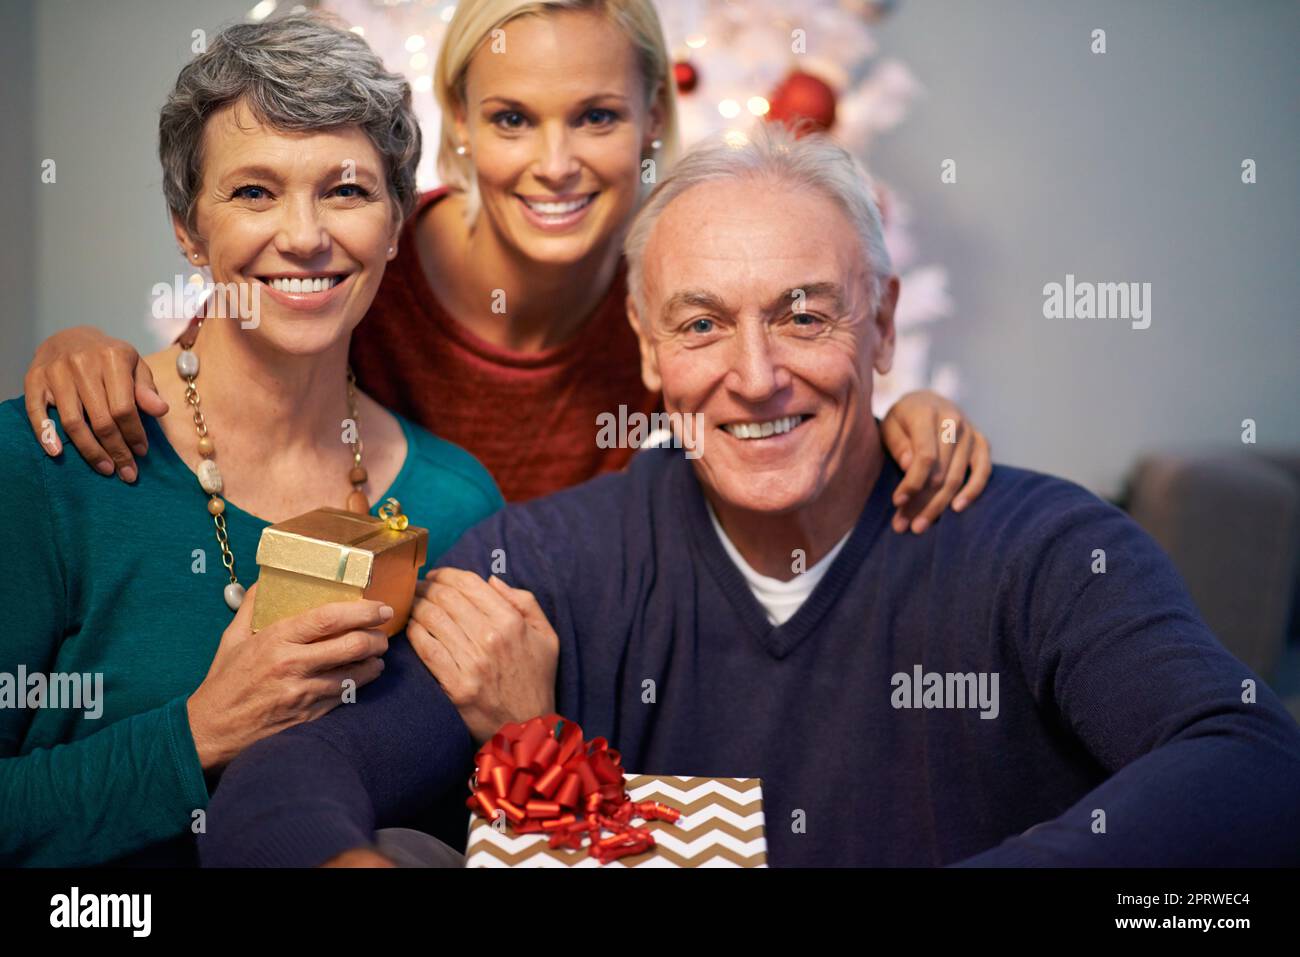 Zeit mit der Familie während der Weihnachtszeit. Porträt einer glücklichen Familie zu weihnachten. Stockfoto